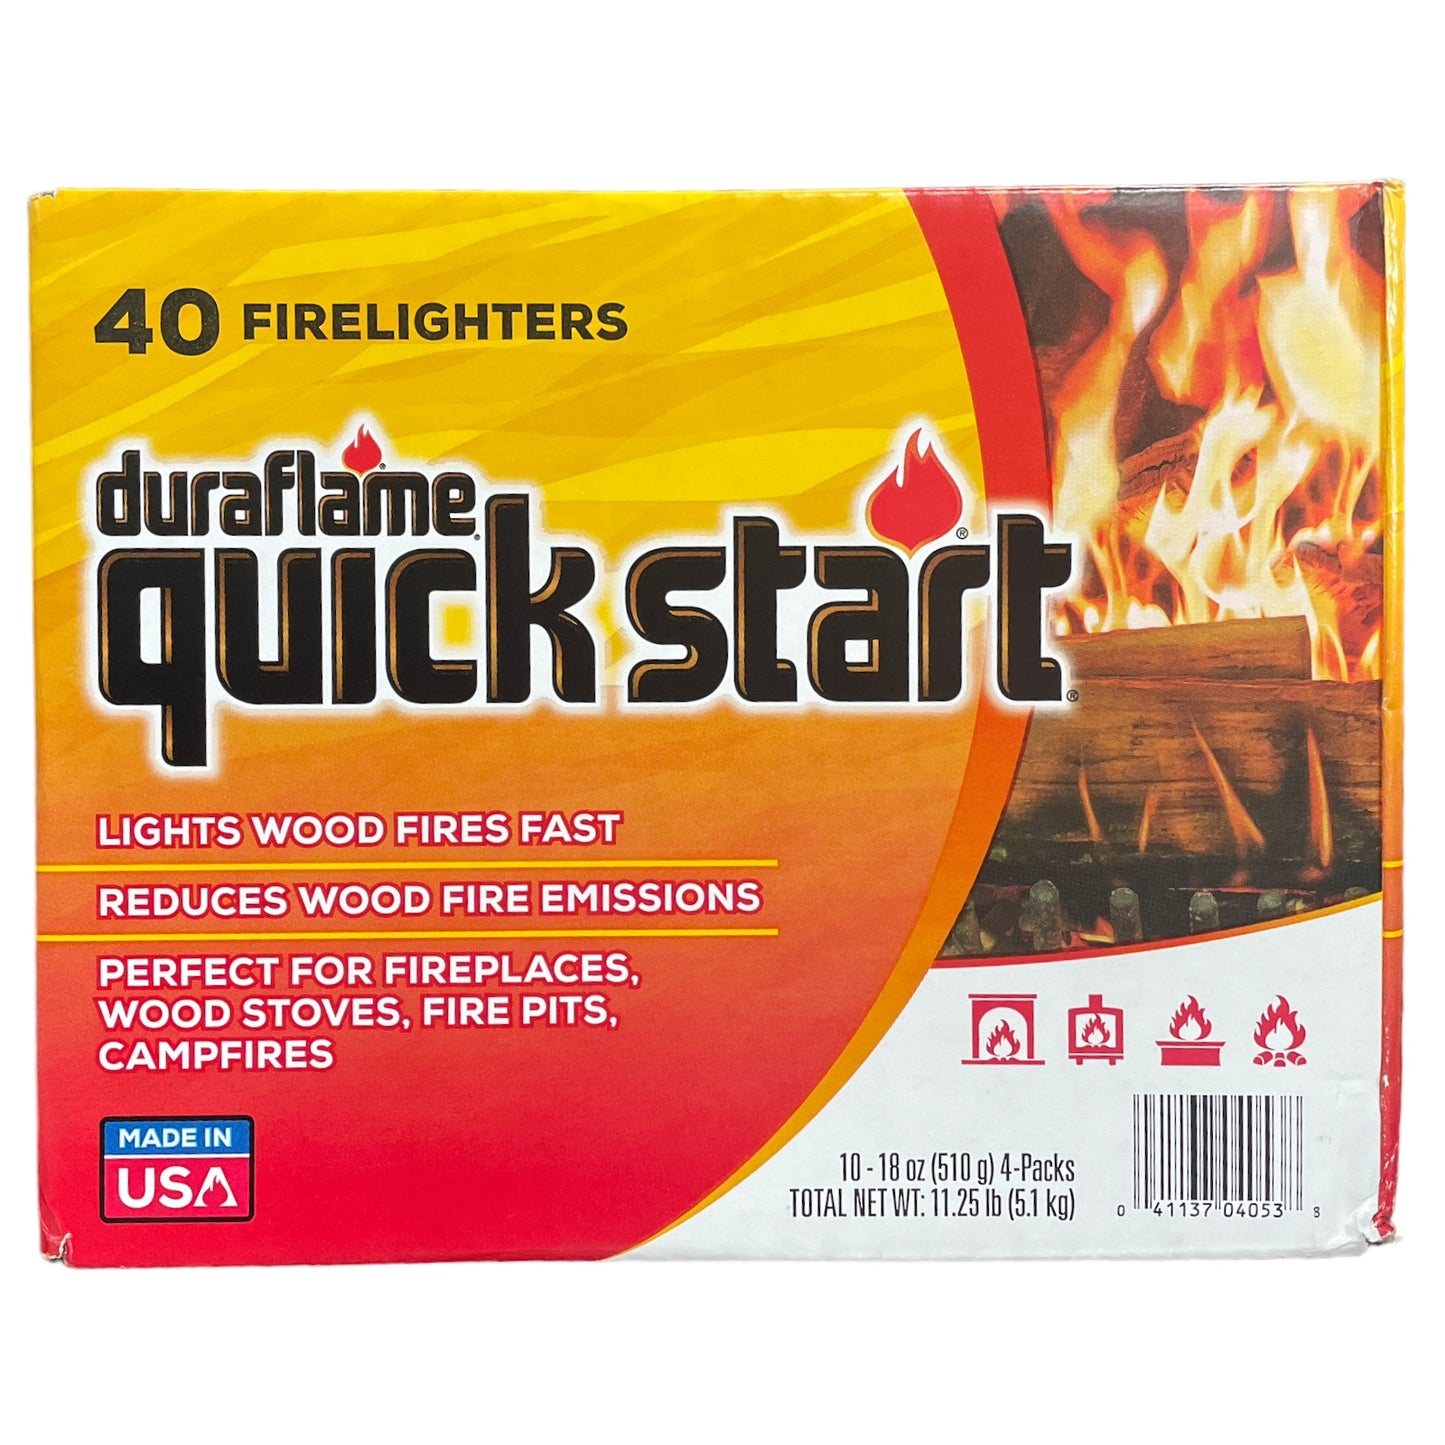 Duraflame quick start Firelighters,10 Packs of 4 (40 sticks)